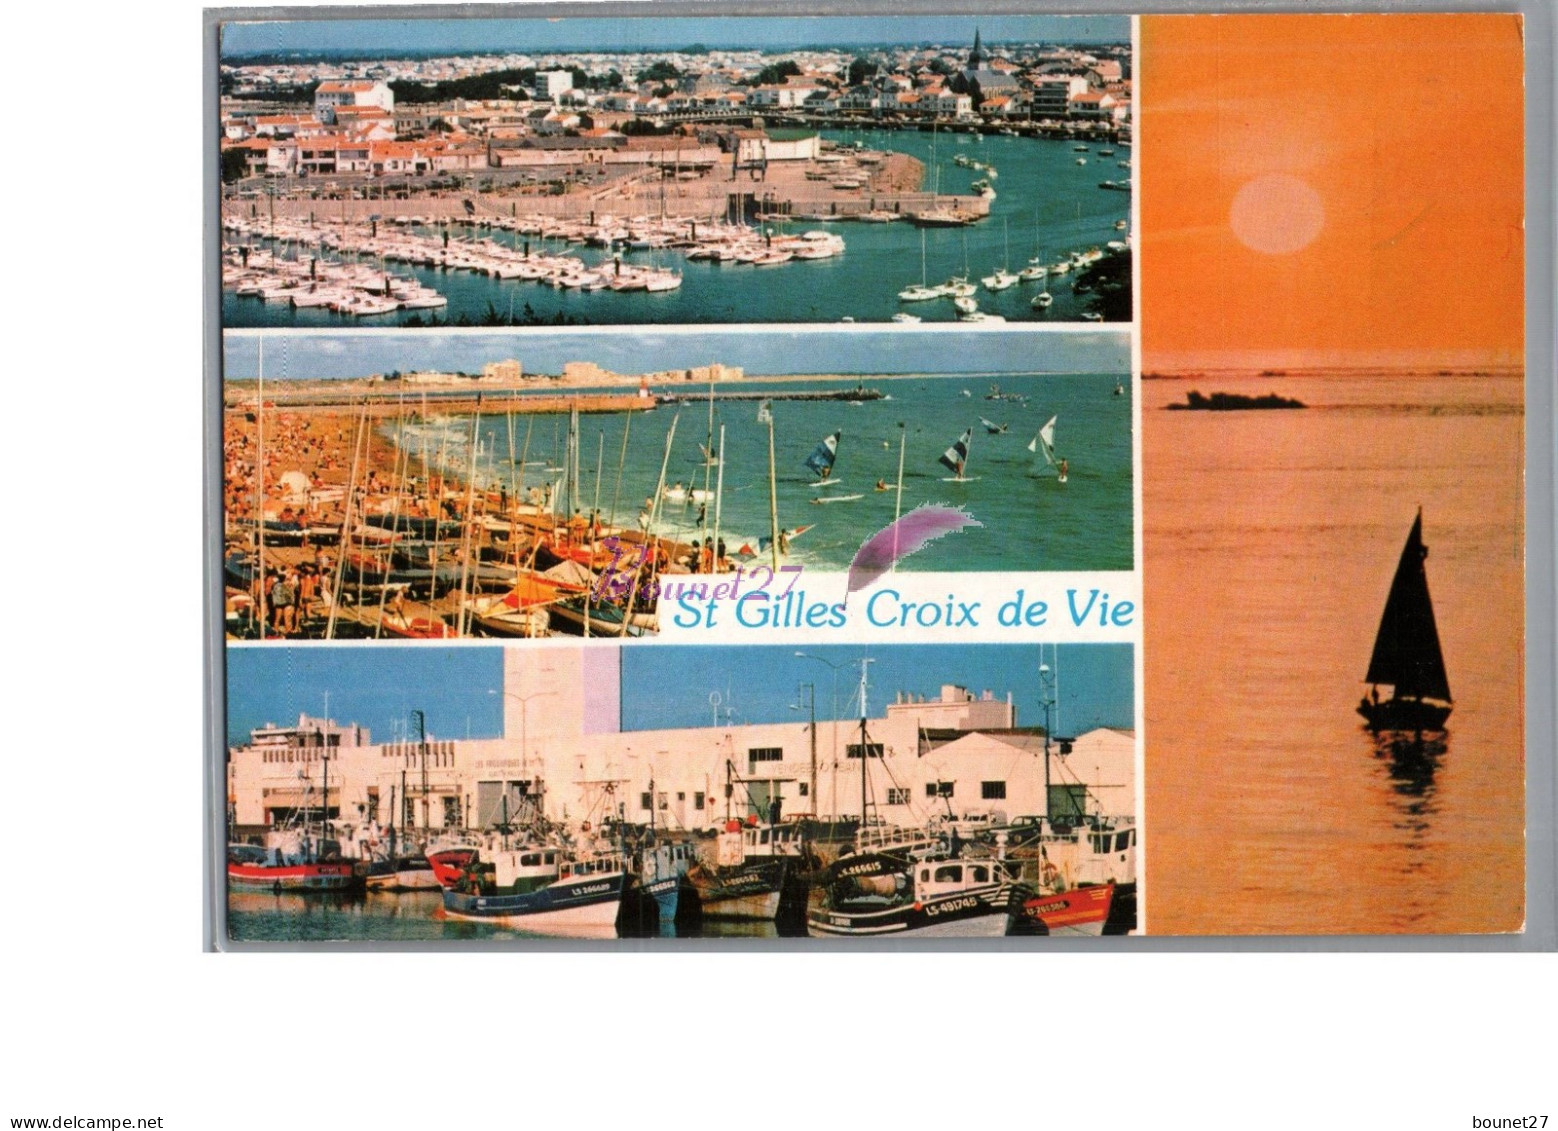 SAINT GILLES CROIX DE VIE 85 - Le Port De Pêche Port De Plaisance La Plage Et Coucher De Soleil 1990 Bâteau Voilier - Saint Gilles Croix De Vie